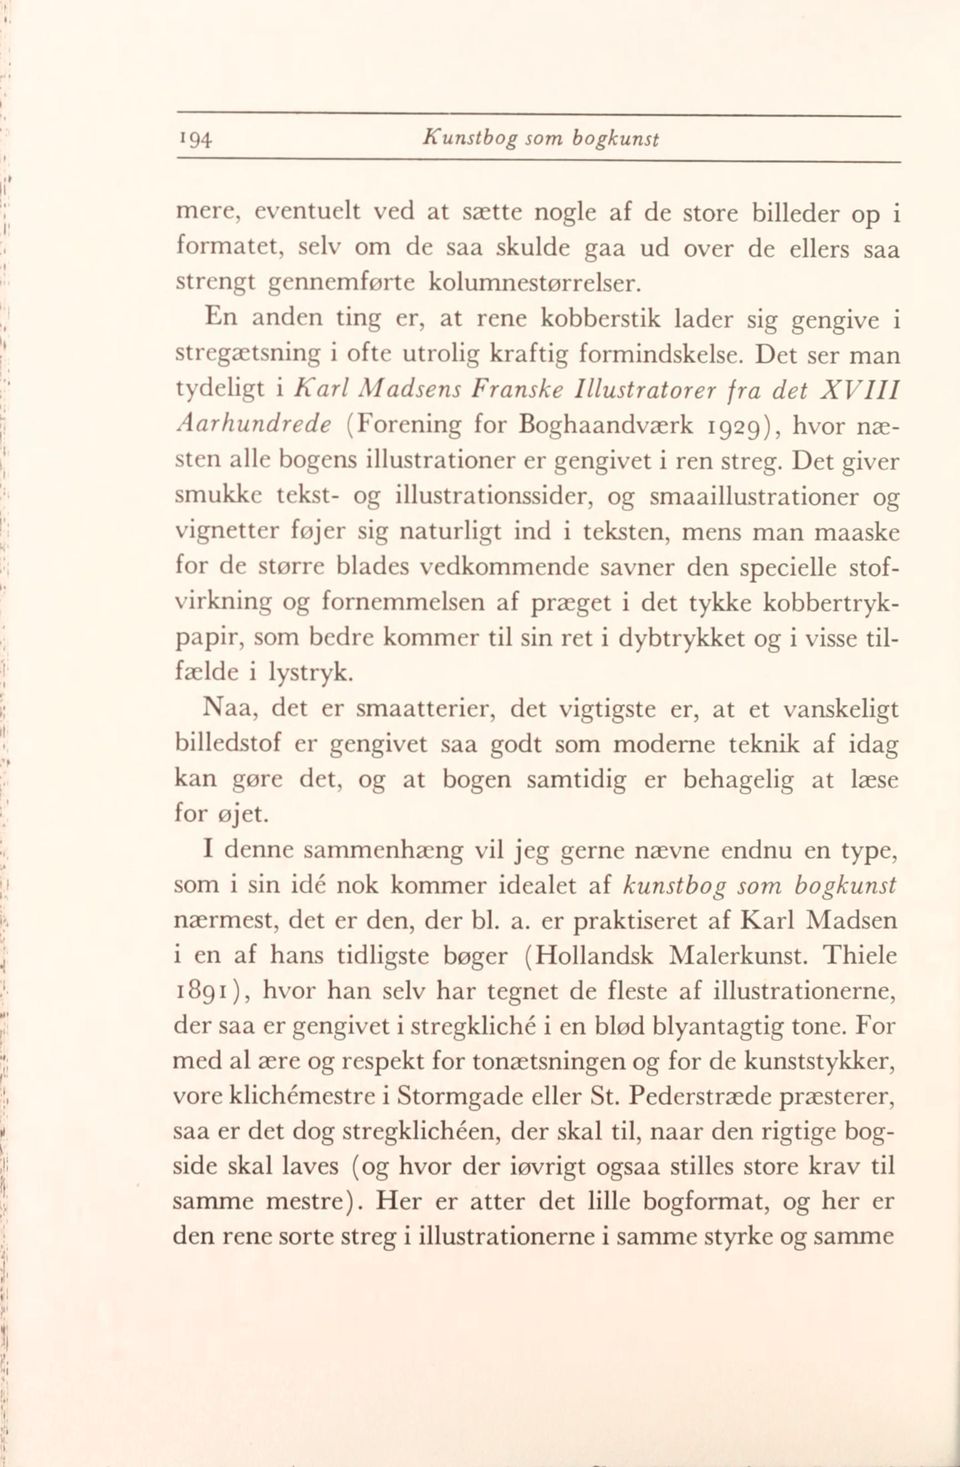 Det ser man tydeligt i Karl Madsens Franske Illustratorer fra det XVIII Aarhundrede (Forening for Boghaandværk 1929), hvor næsten alle bogens illustrationer er gengivet i ren streg.